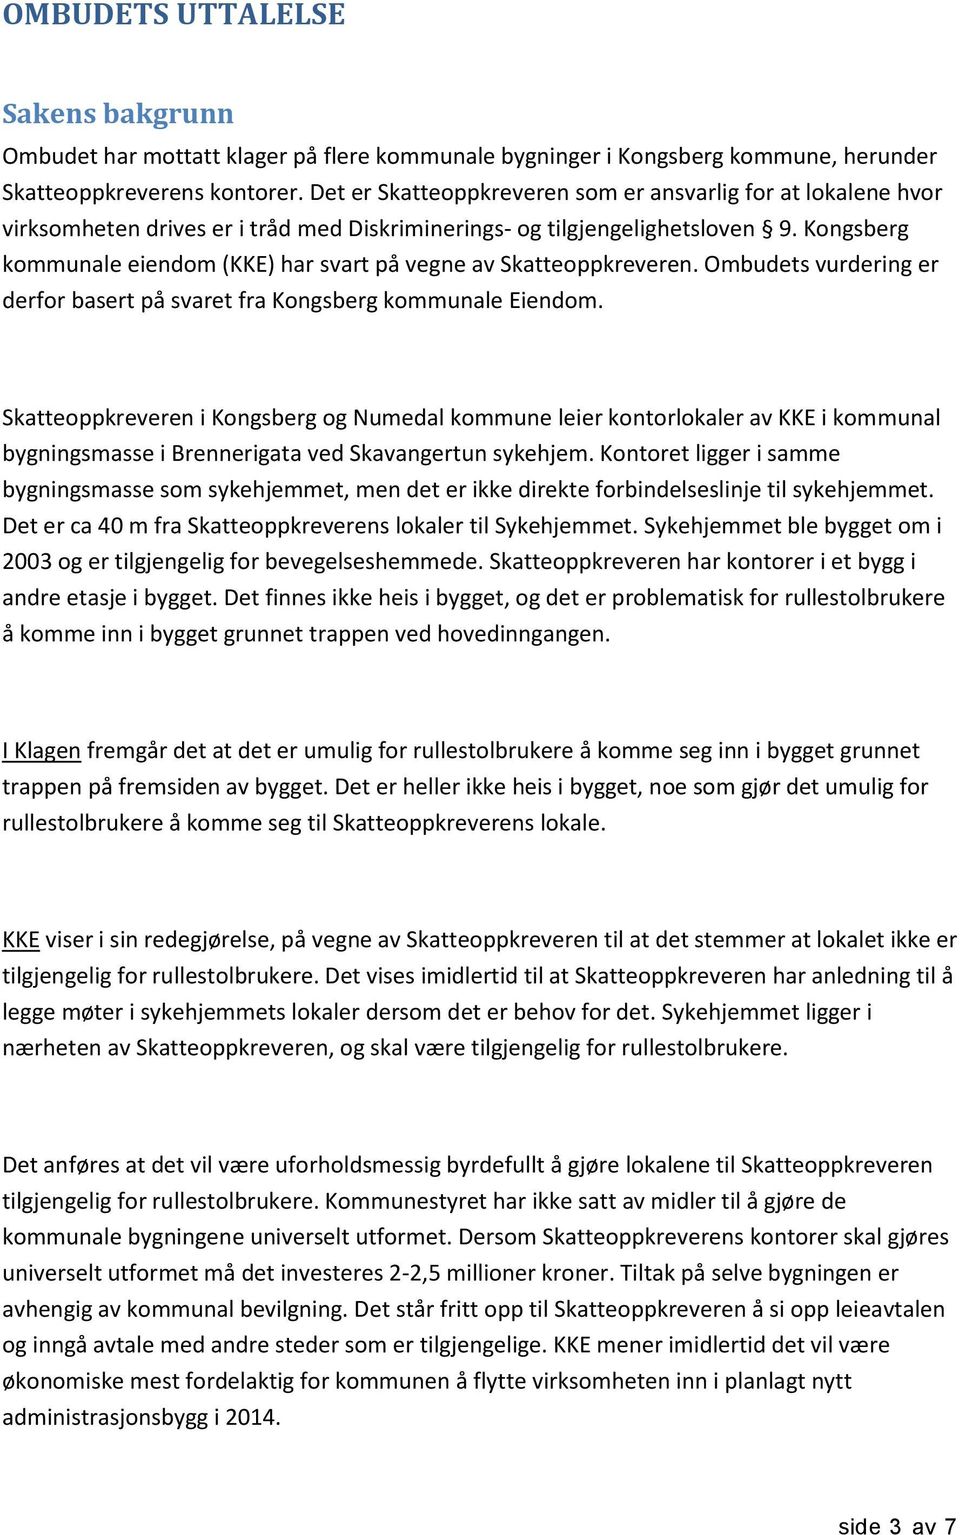 Kongsberg kommunale eiendom (KKE) har svart på vegne av Skatteoppkreveren. Ombudets vurdering er derfor basert på svaret fra Kongsberg kommunale Eiendom.